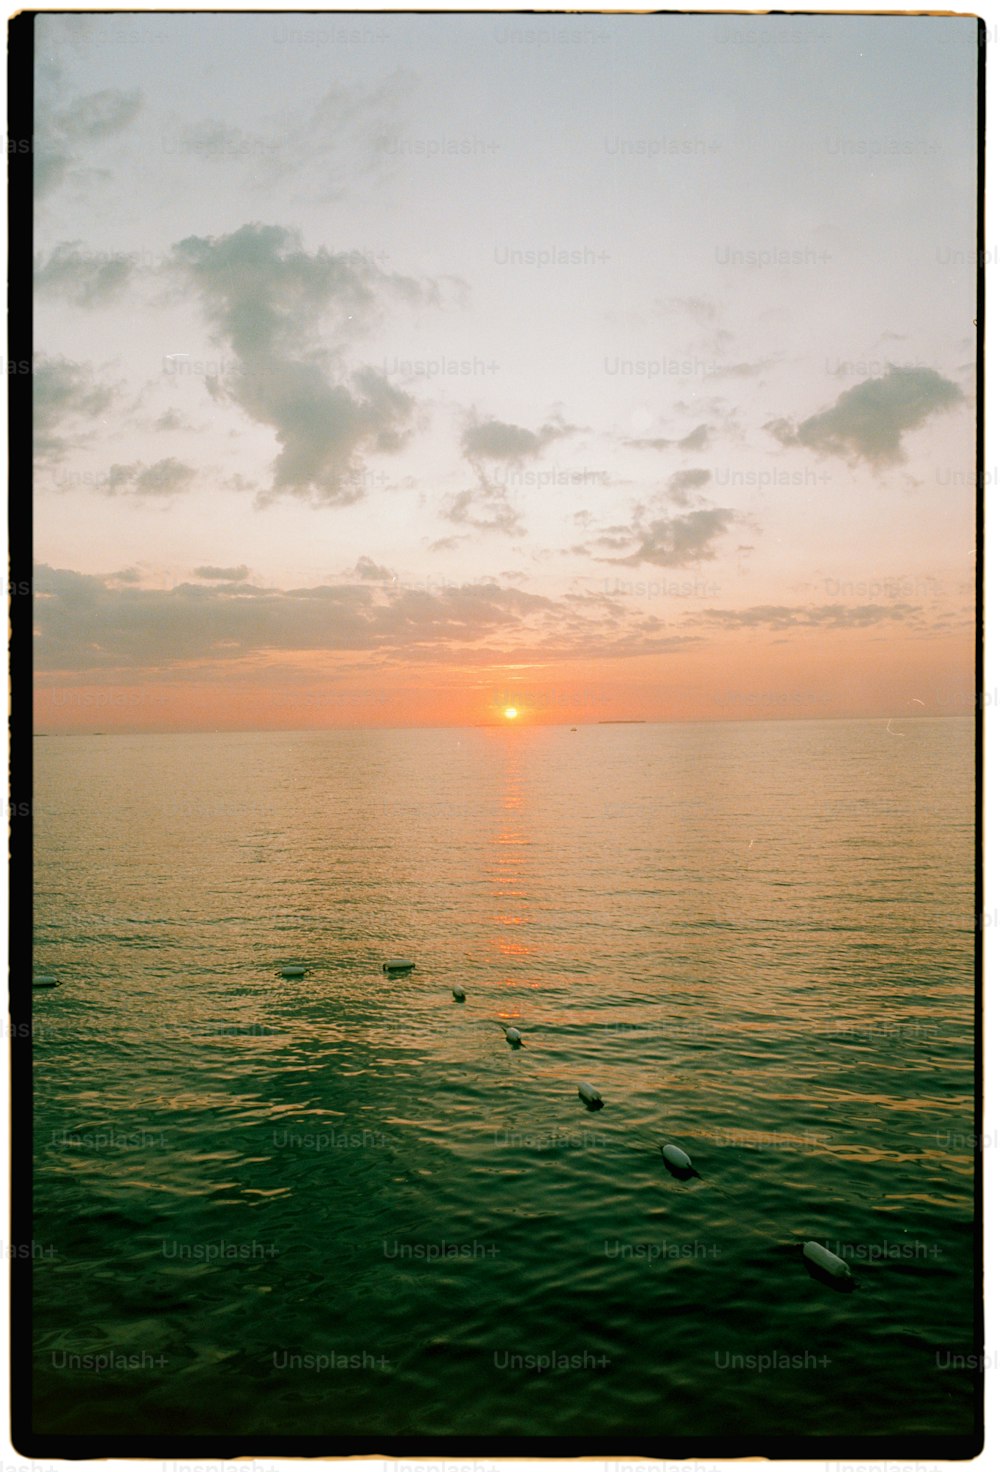 Il sole sta tramontando sull'oceano con le anatre che nuotano nell'acqua